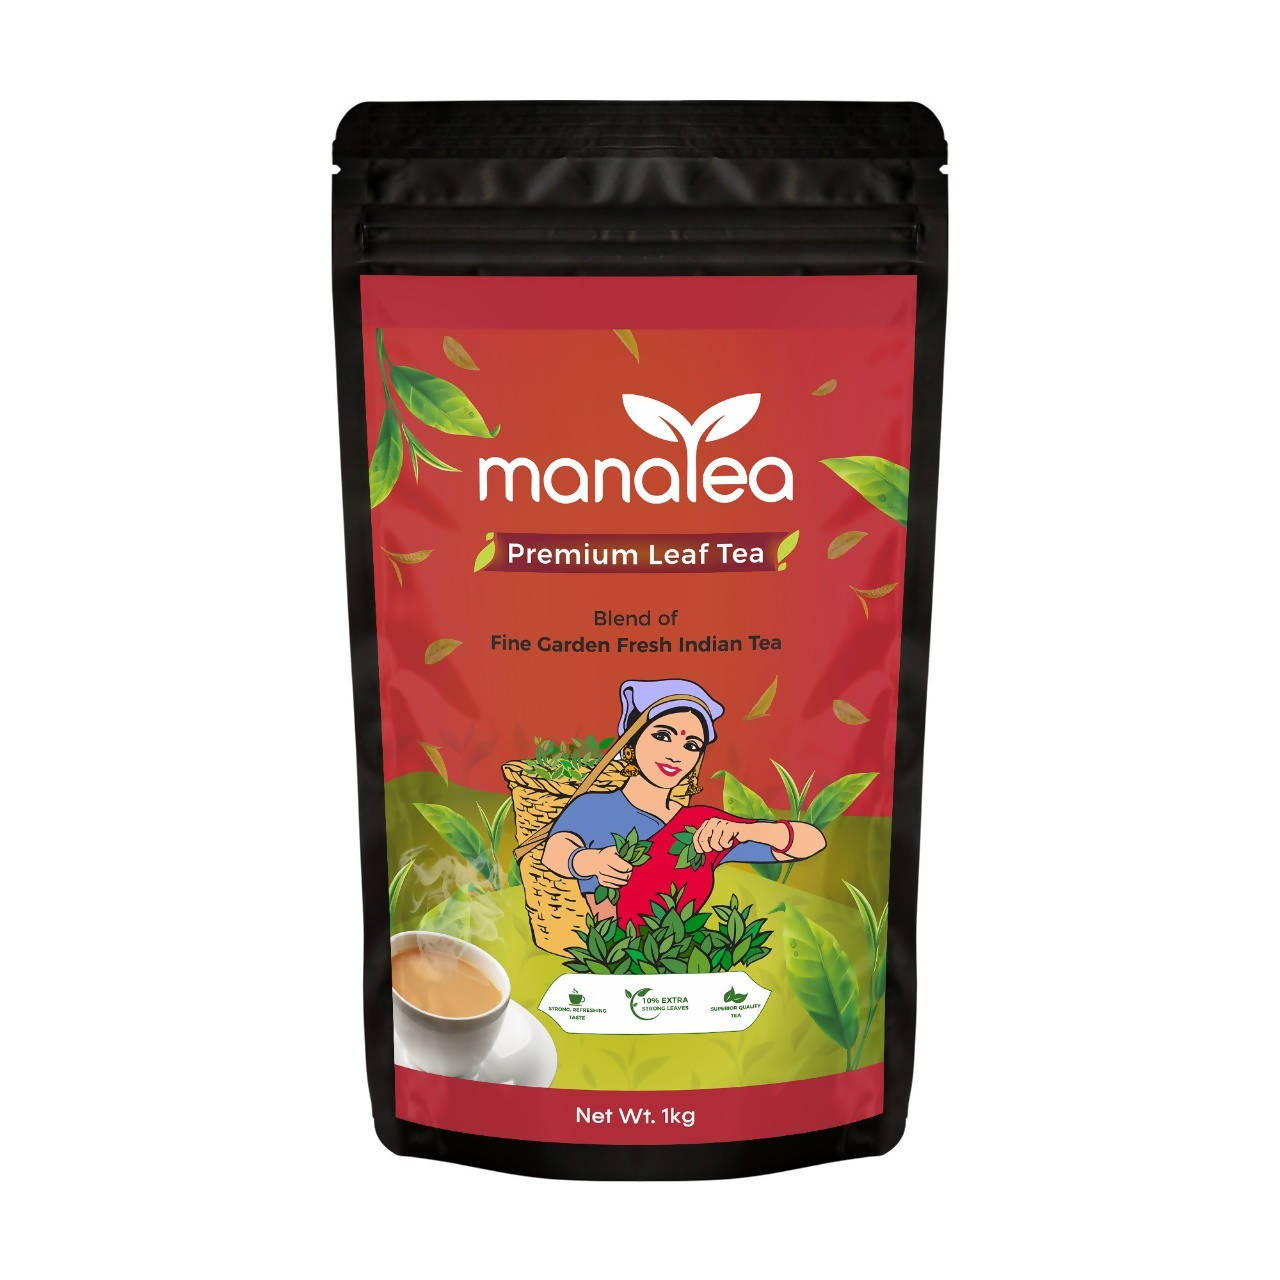 Manatea Premium Leaf Tea 1 kg